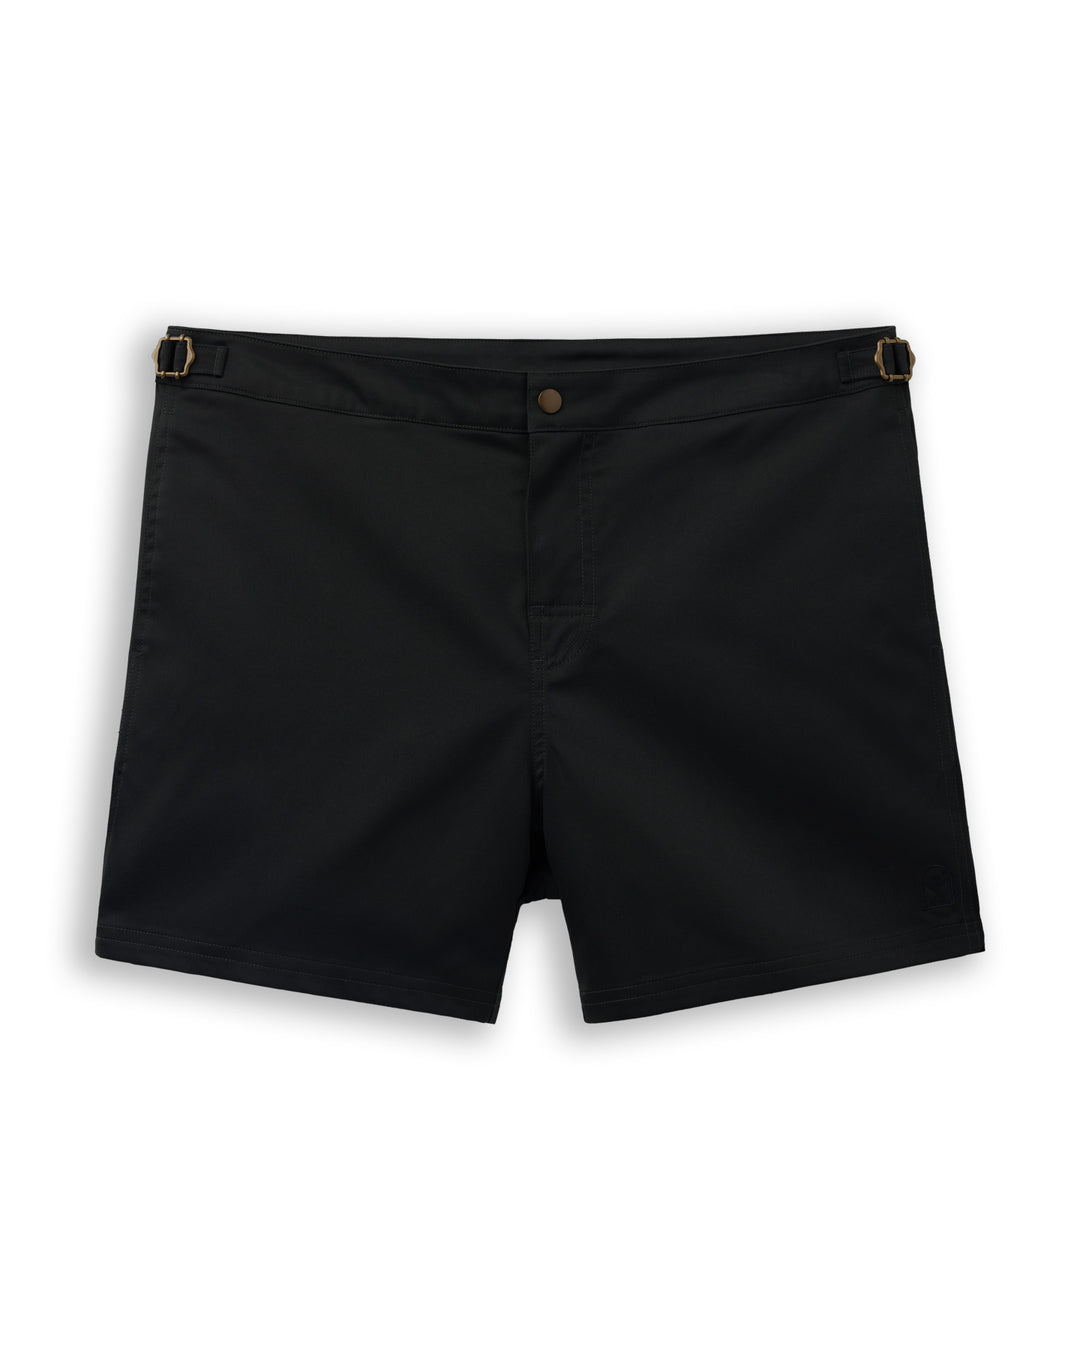 Dandy Del Mar's black belt shorts